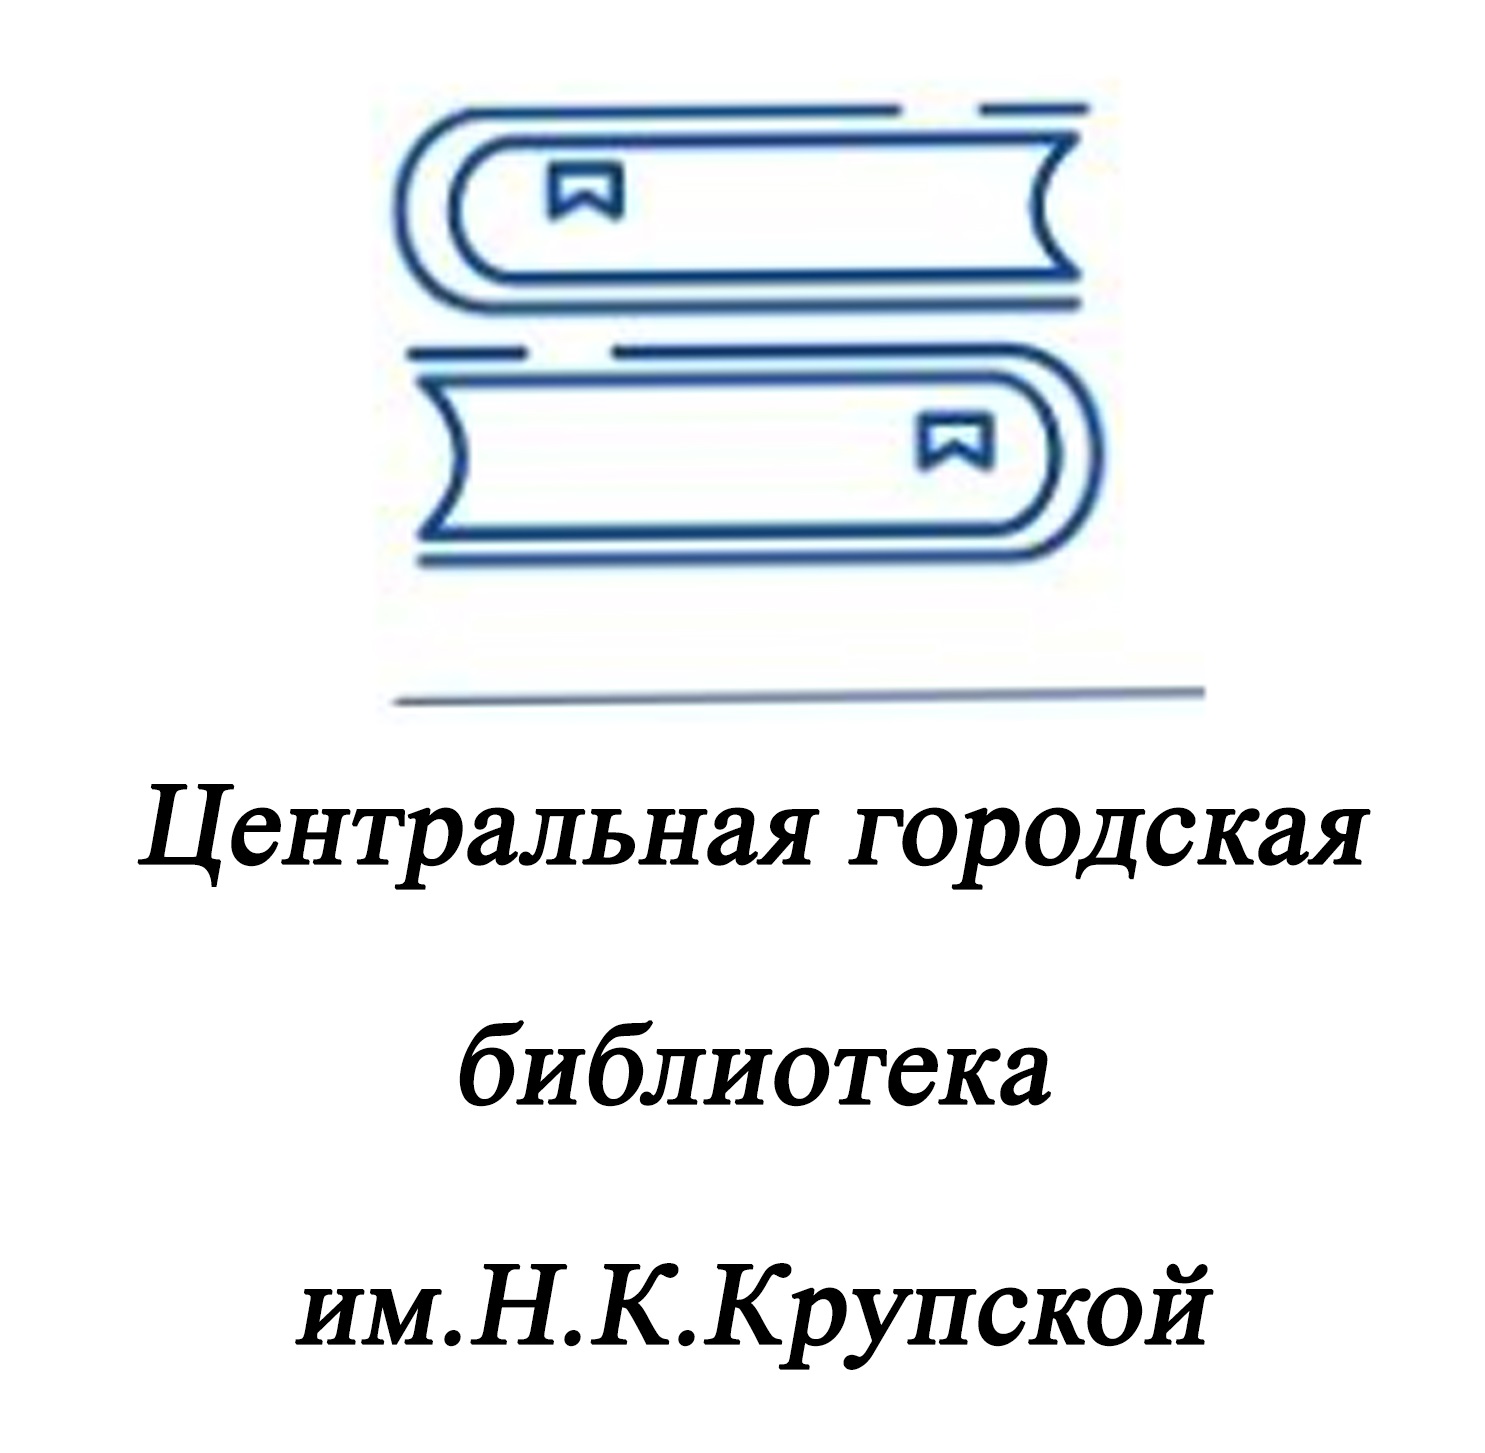 Центральная городская библиотека им.Н.К.Крупской